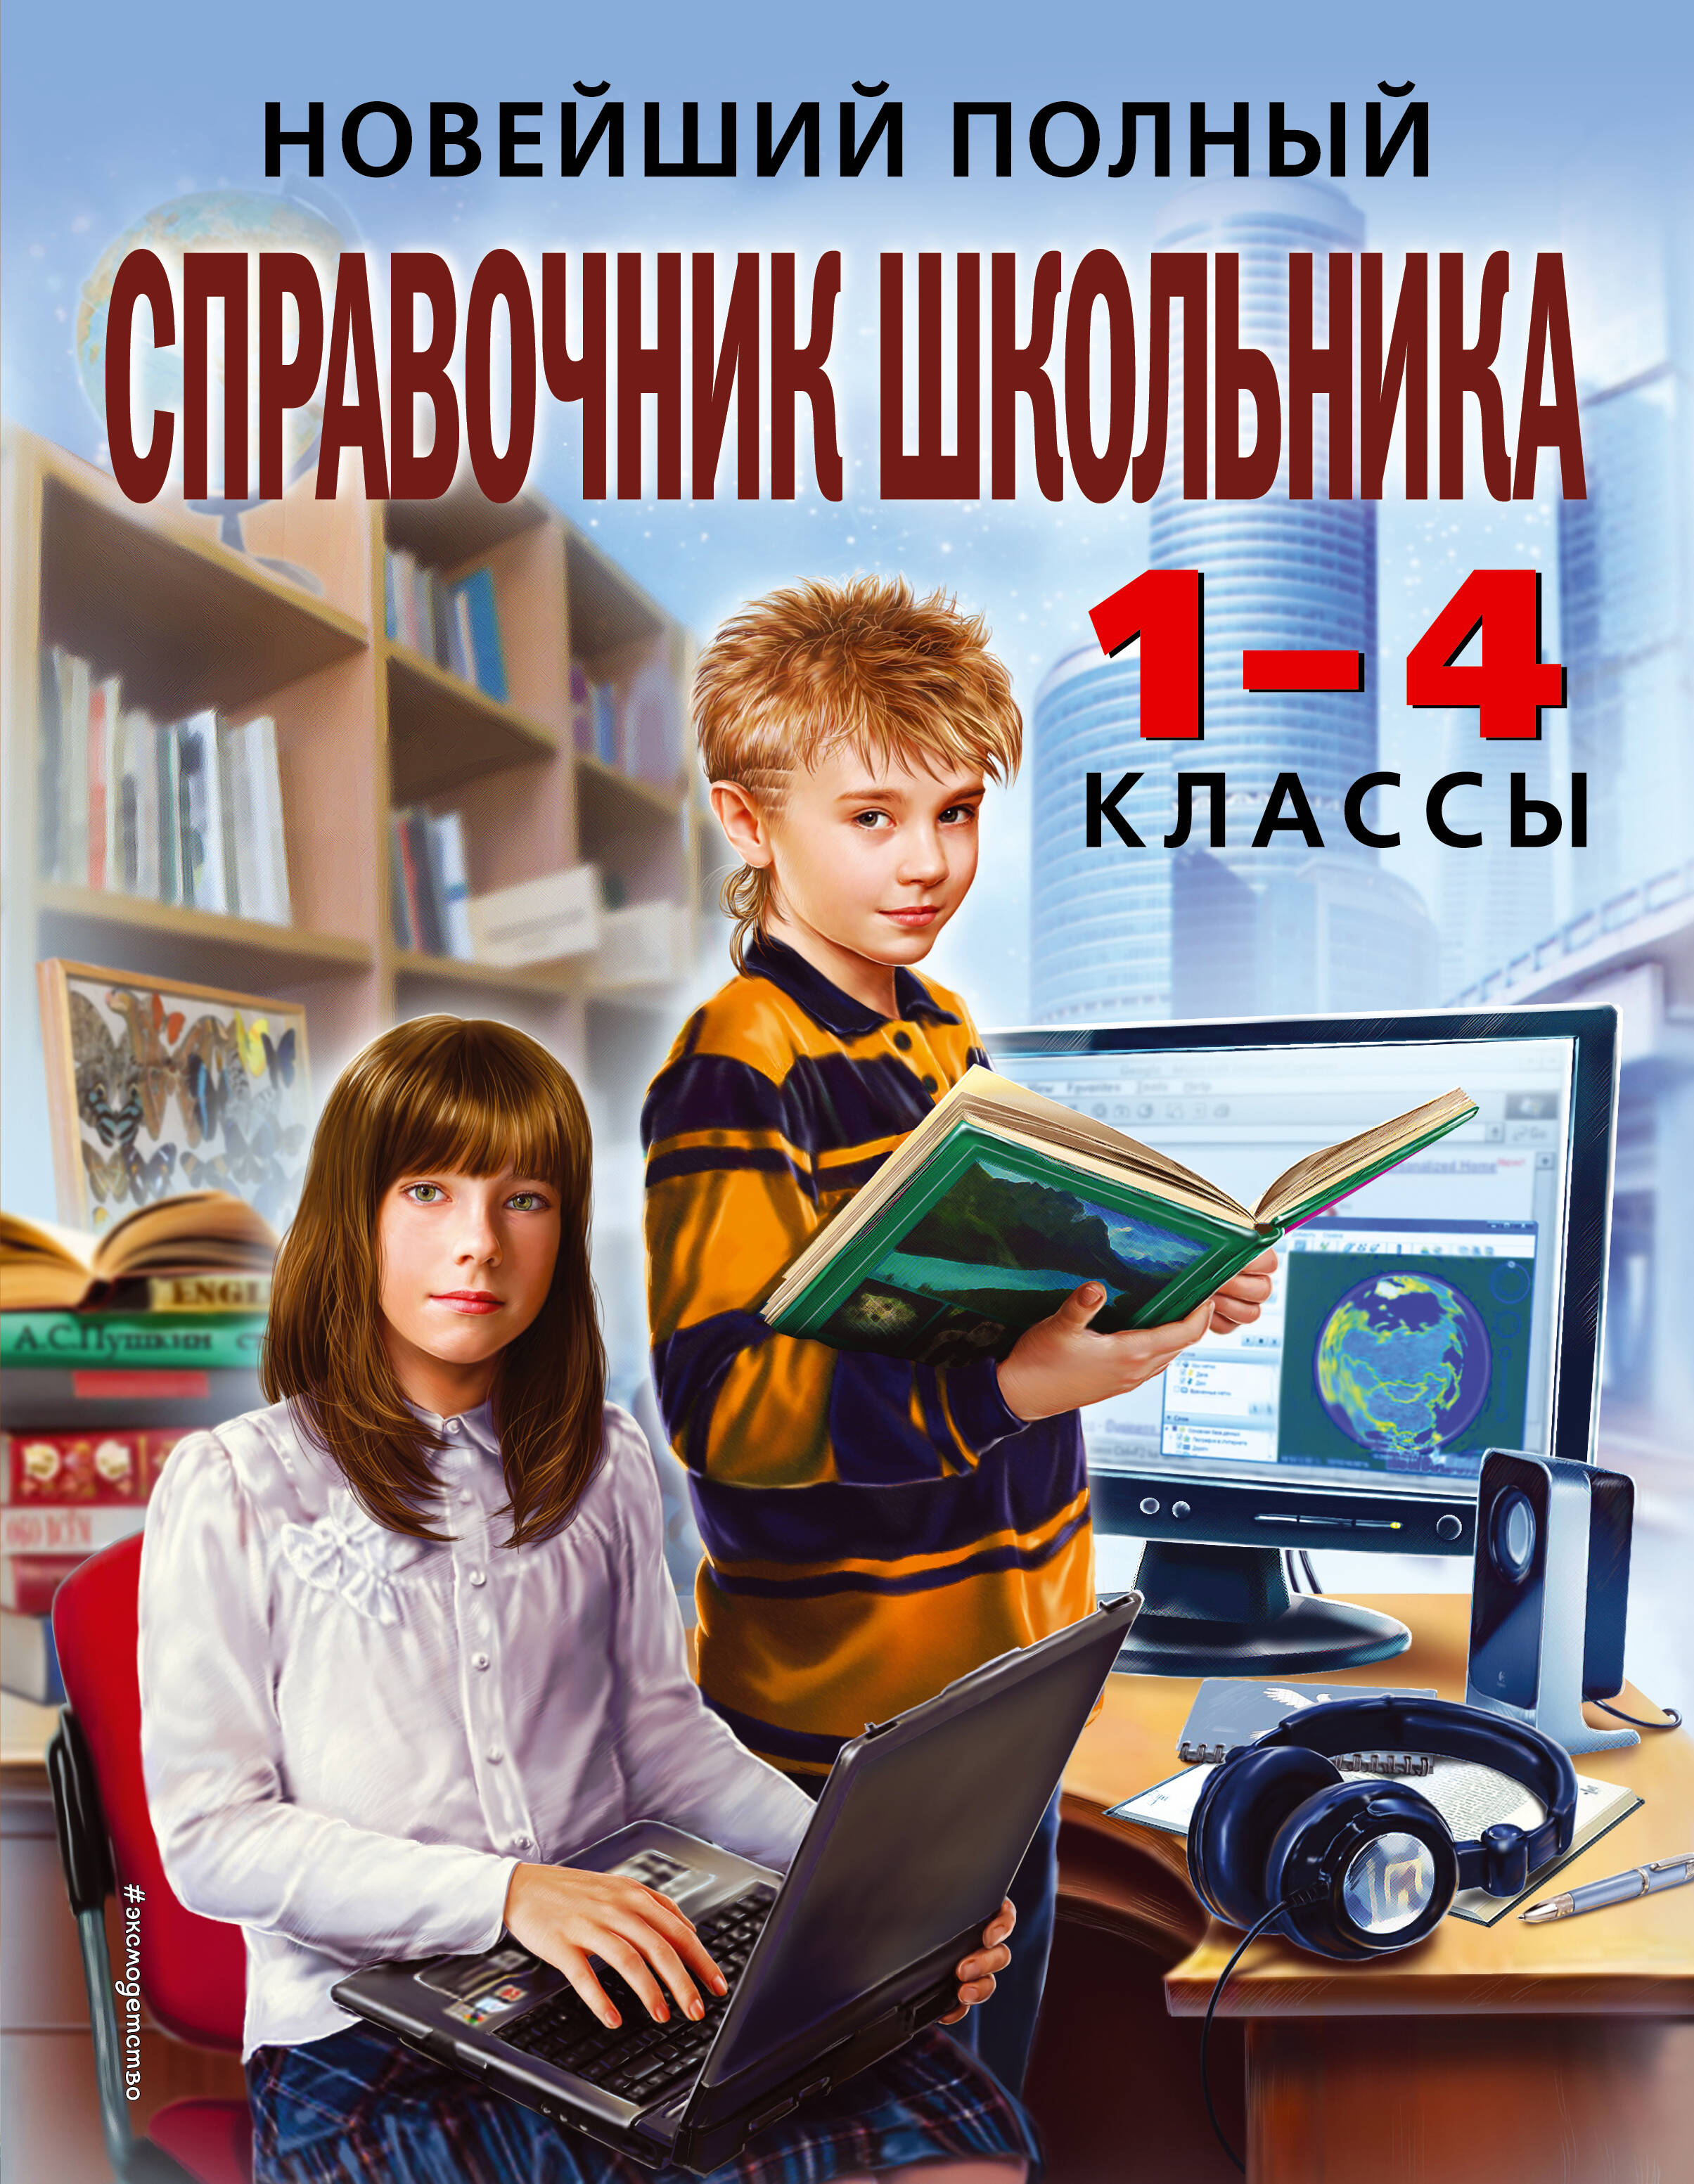 https://cdn.eksmo.ru/v2/ITD000000000207187/COVER/cover1.jpg